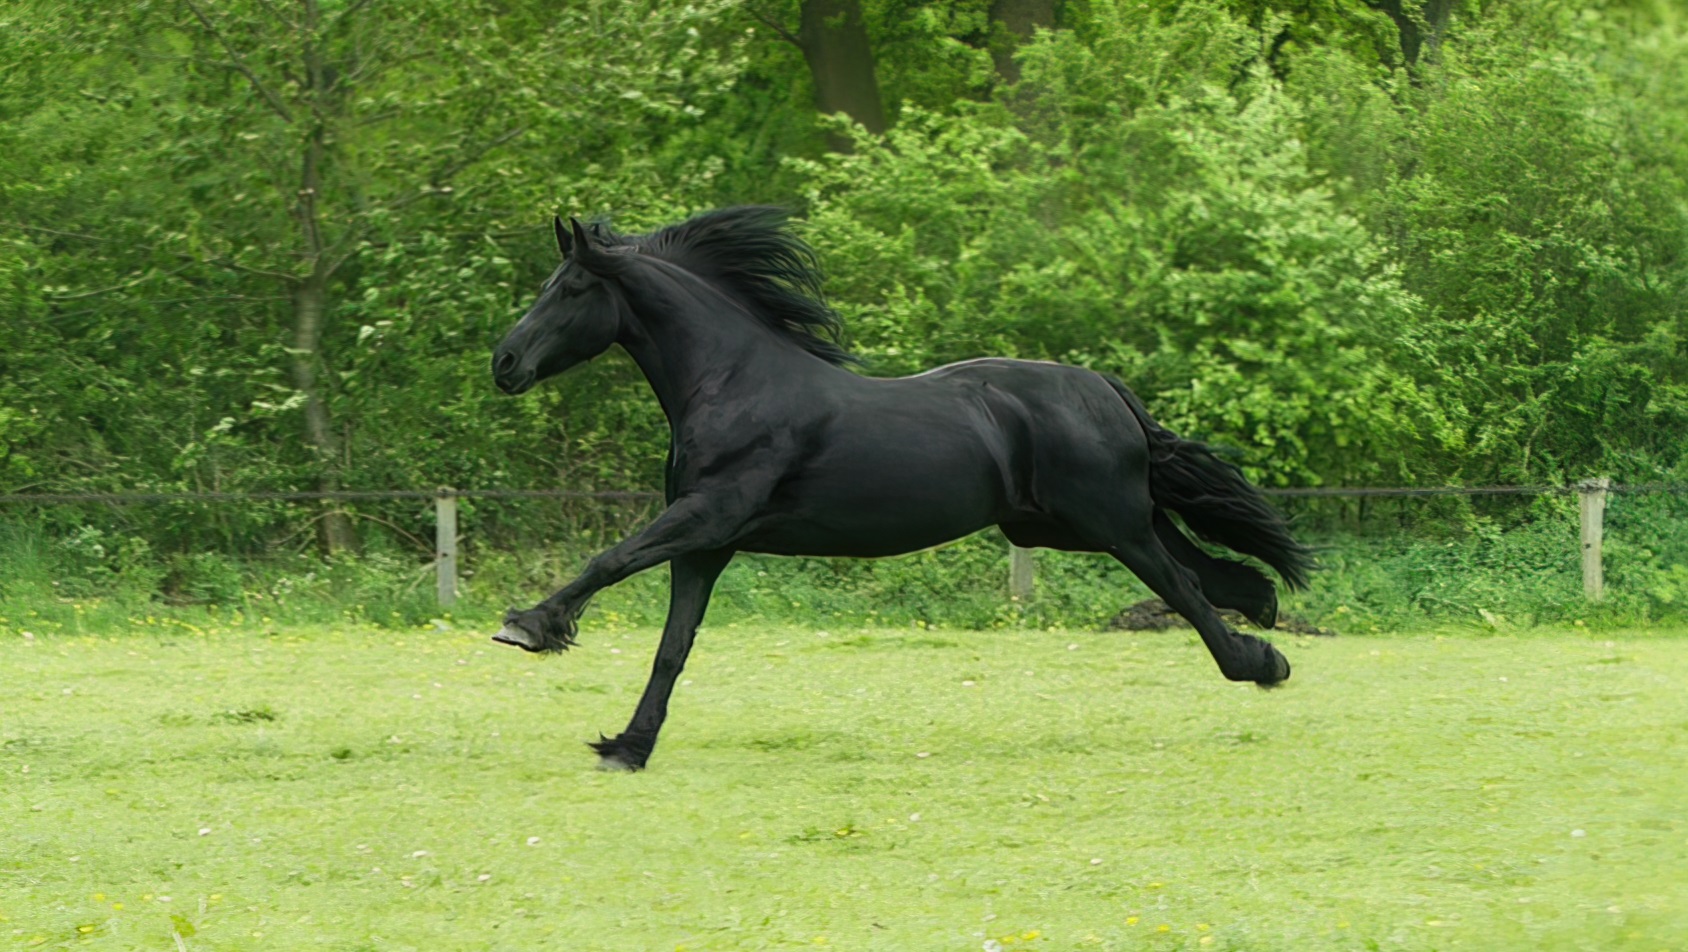 Od czego pochodzi określenie “czarny koń”?